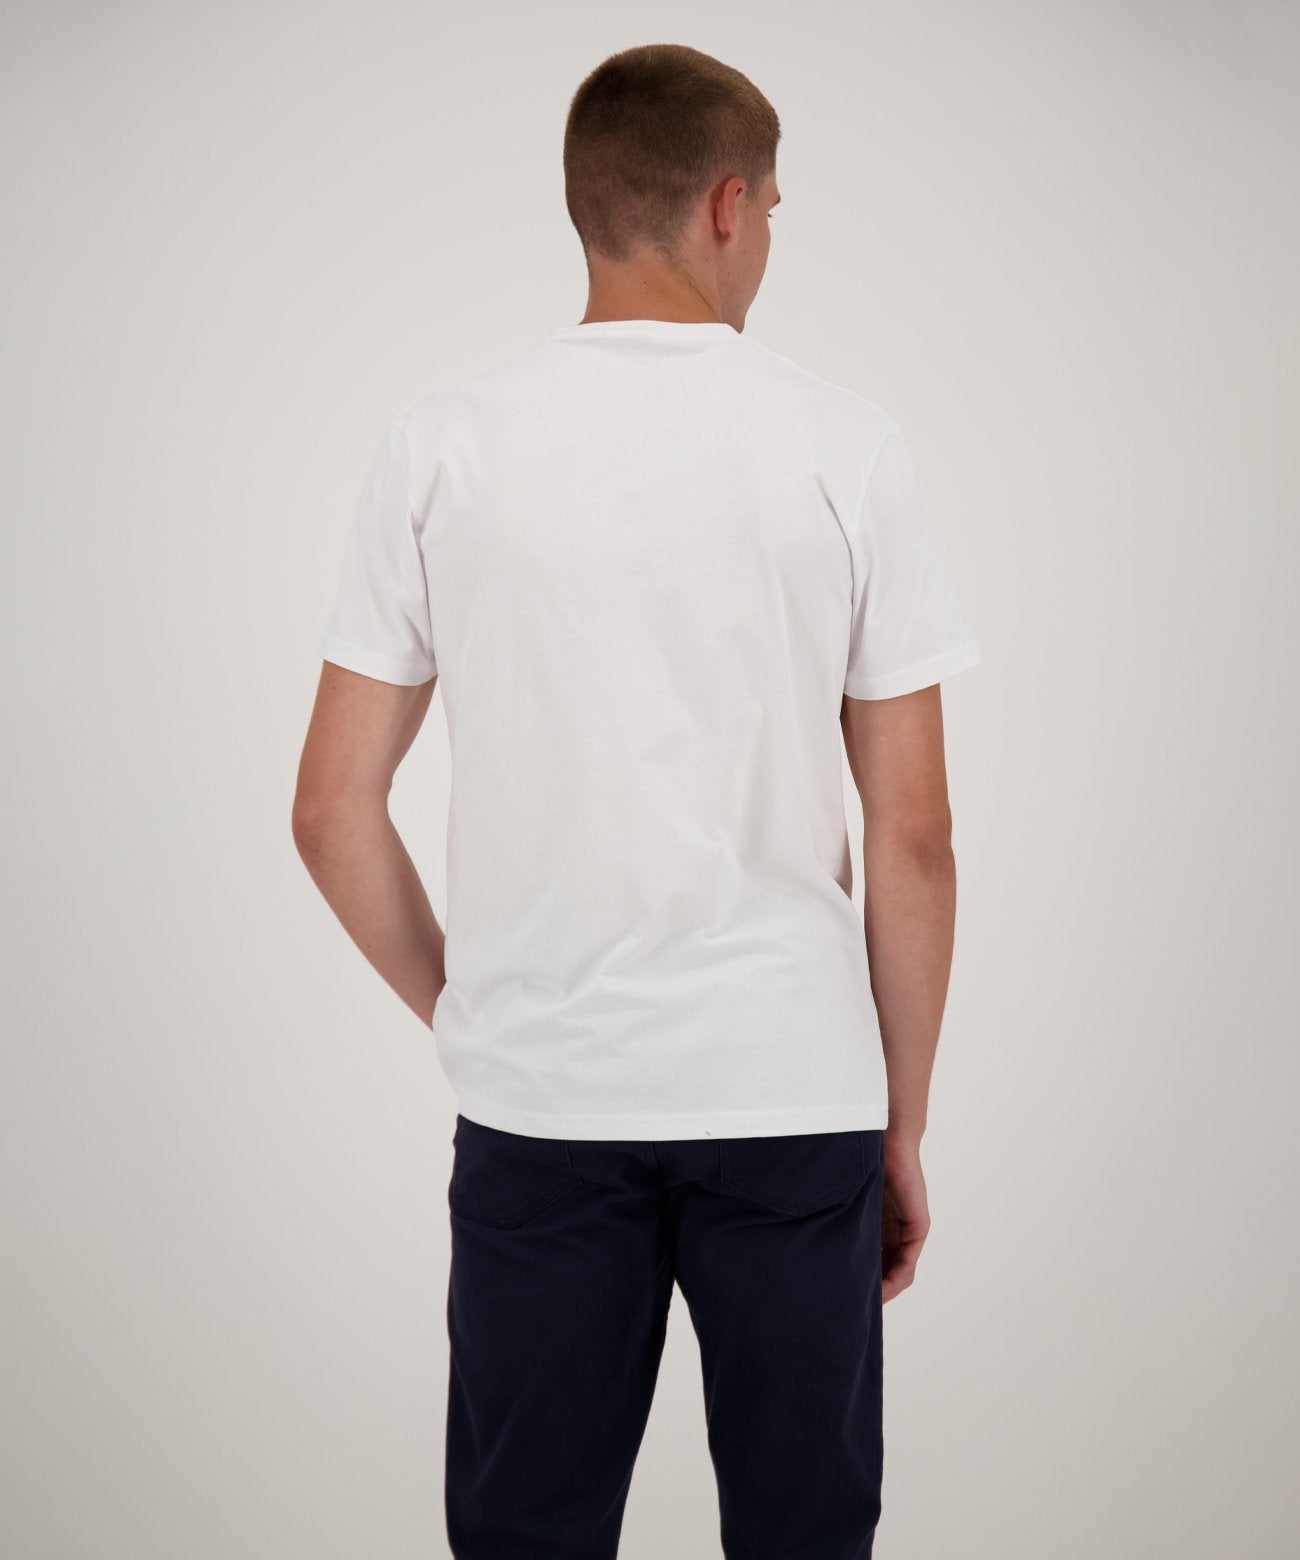 RAGMAN Doppelpack - 2 T-Shirts mit V-Ausschnitt (Weiss)